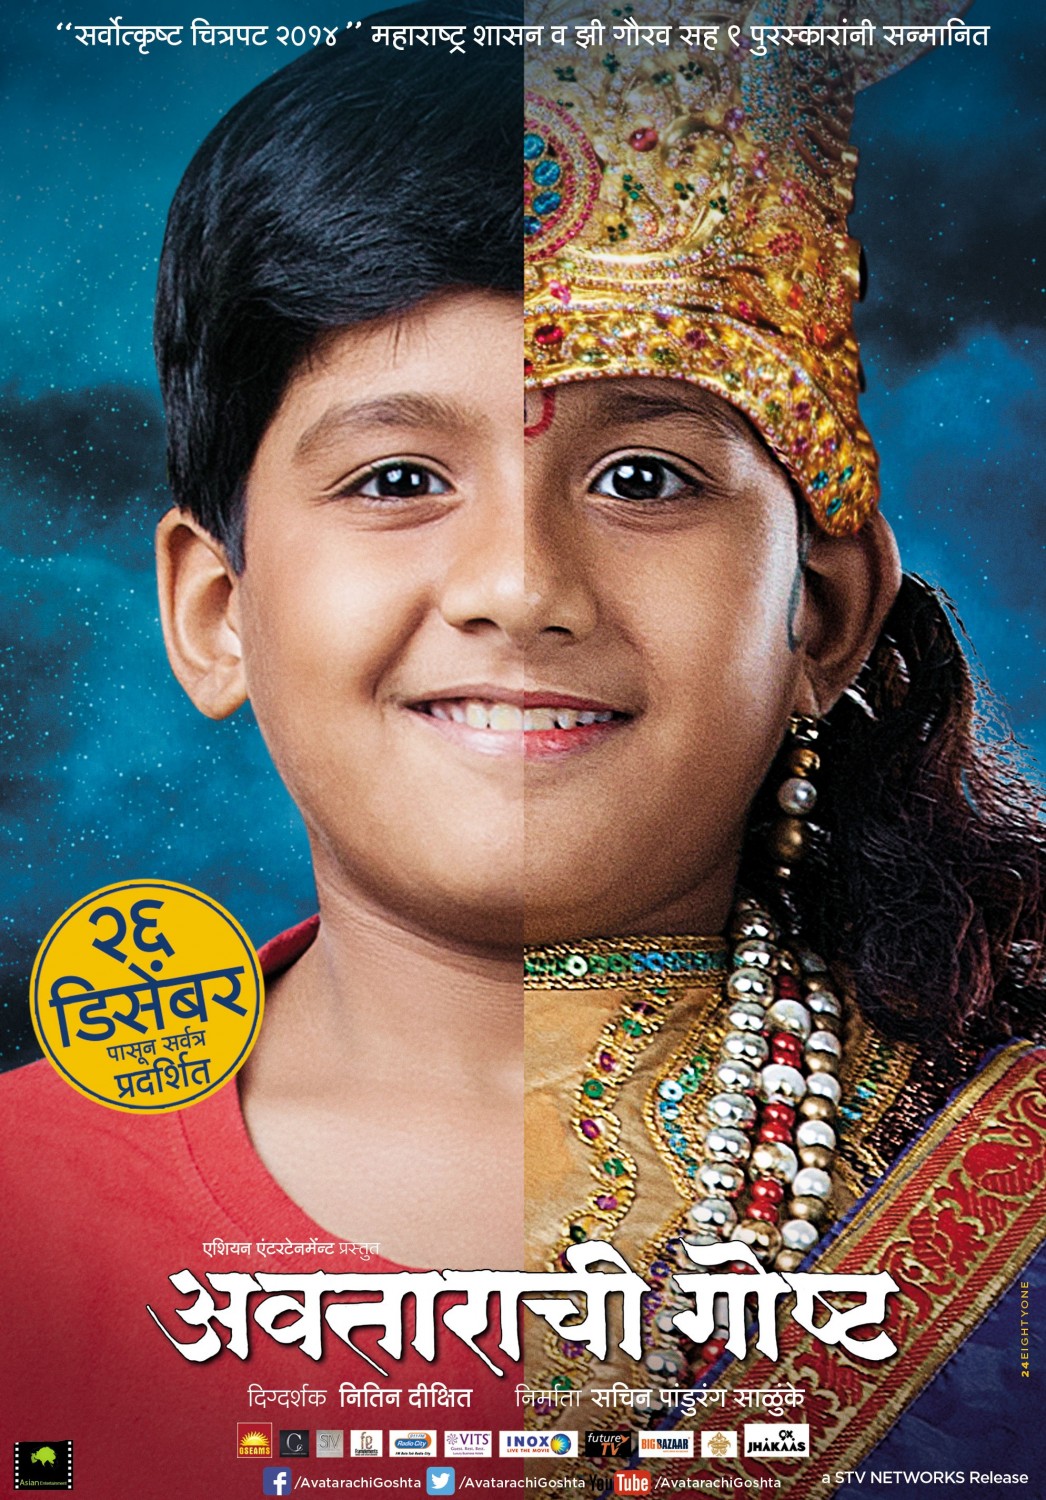 Extra Large Movie Poster Image for Avatarachi Goshta (#2 of 4)